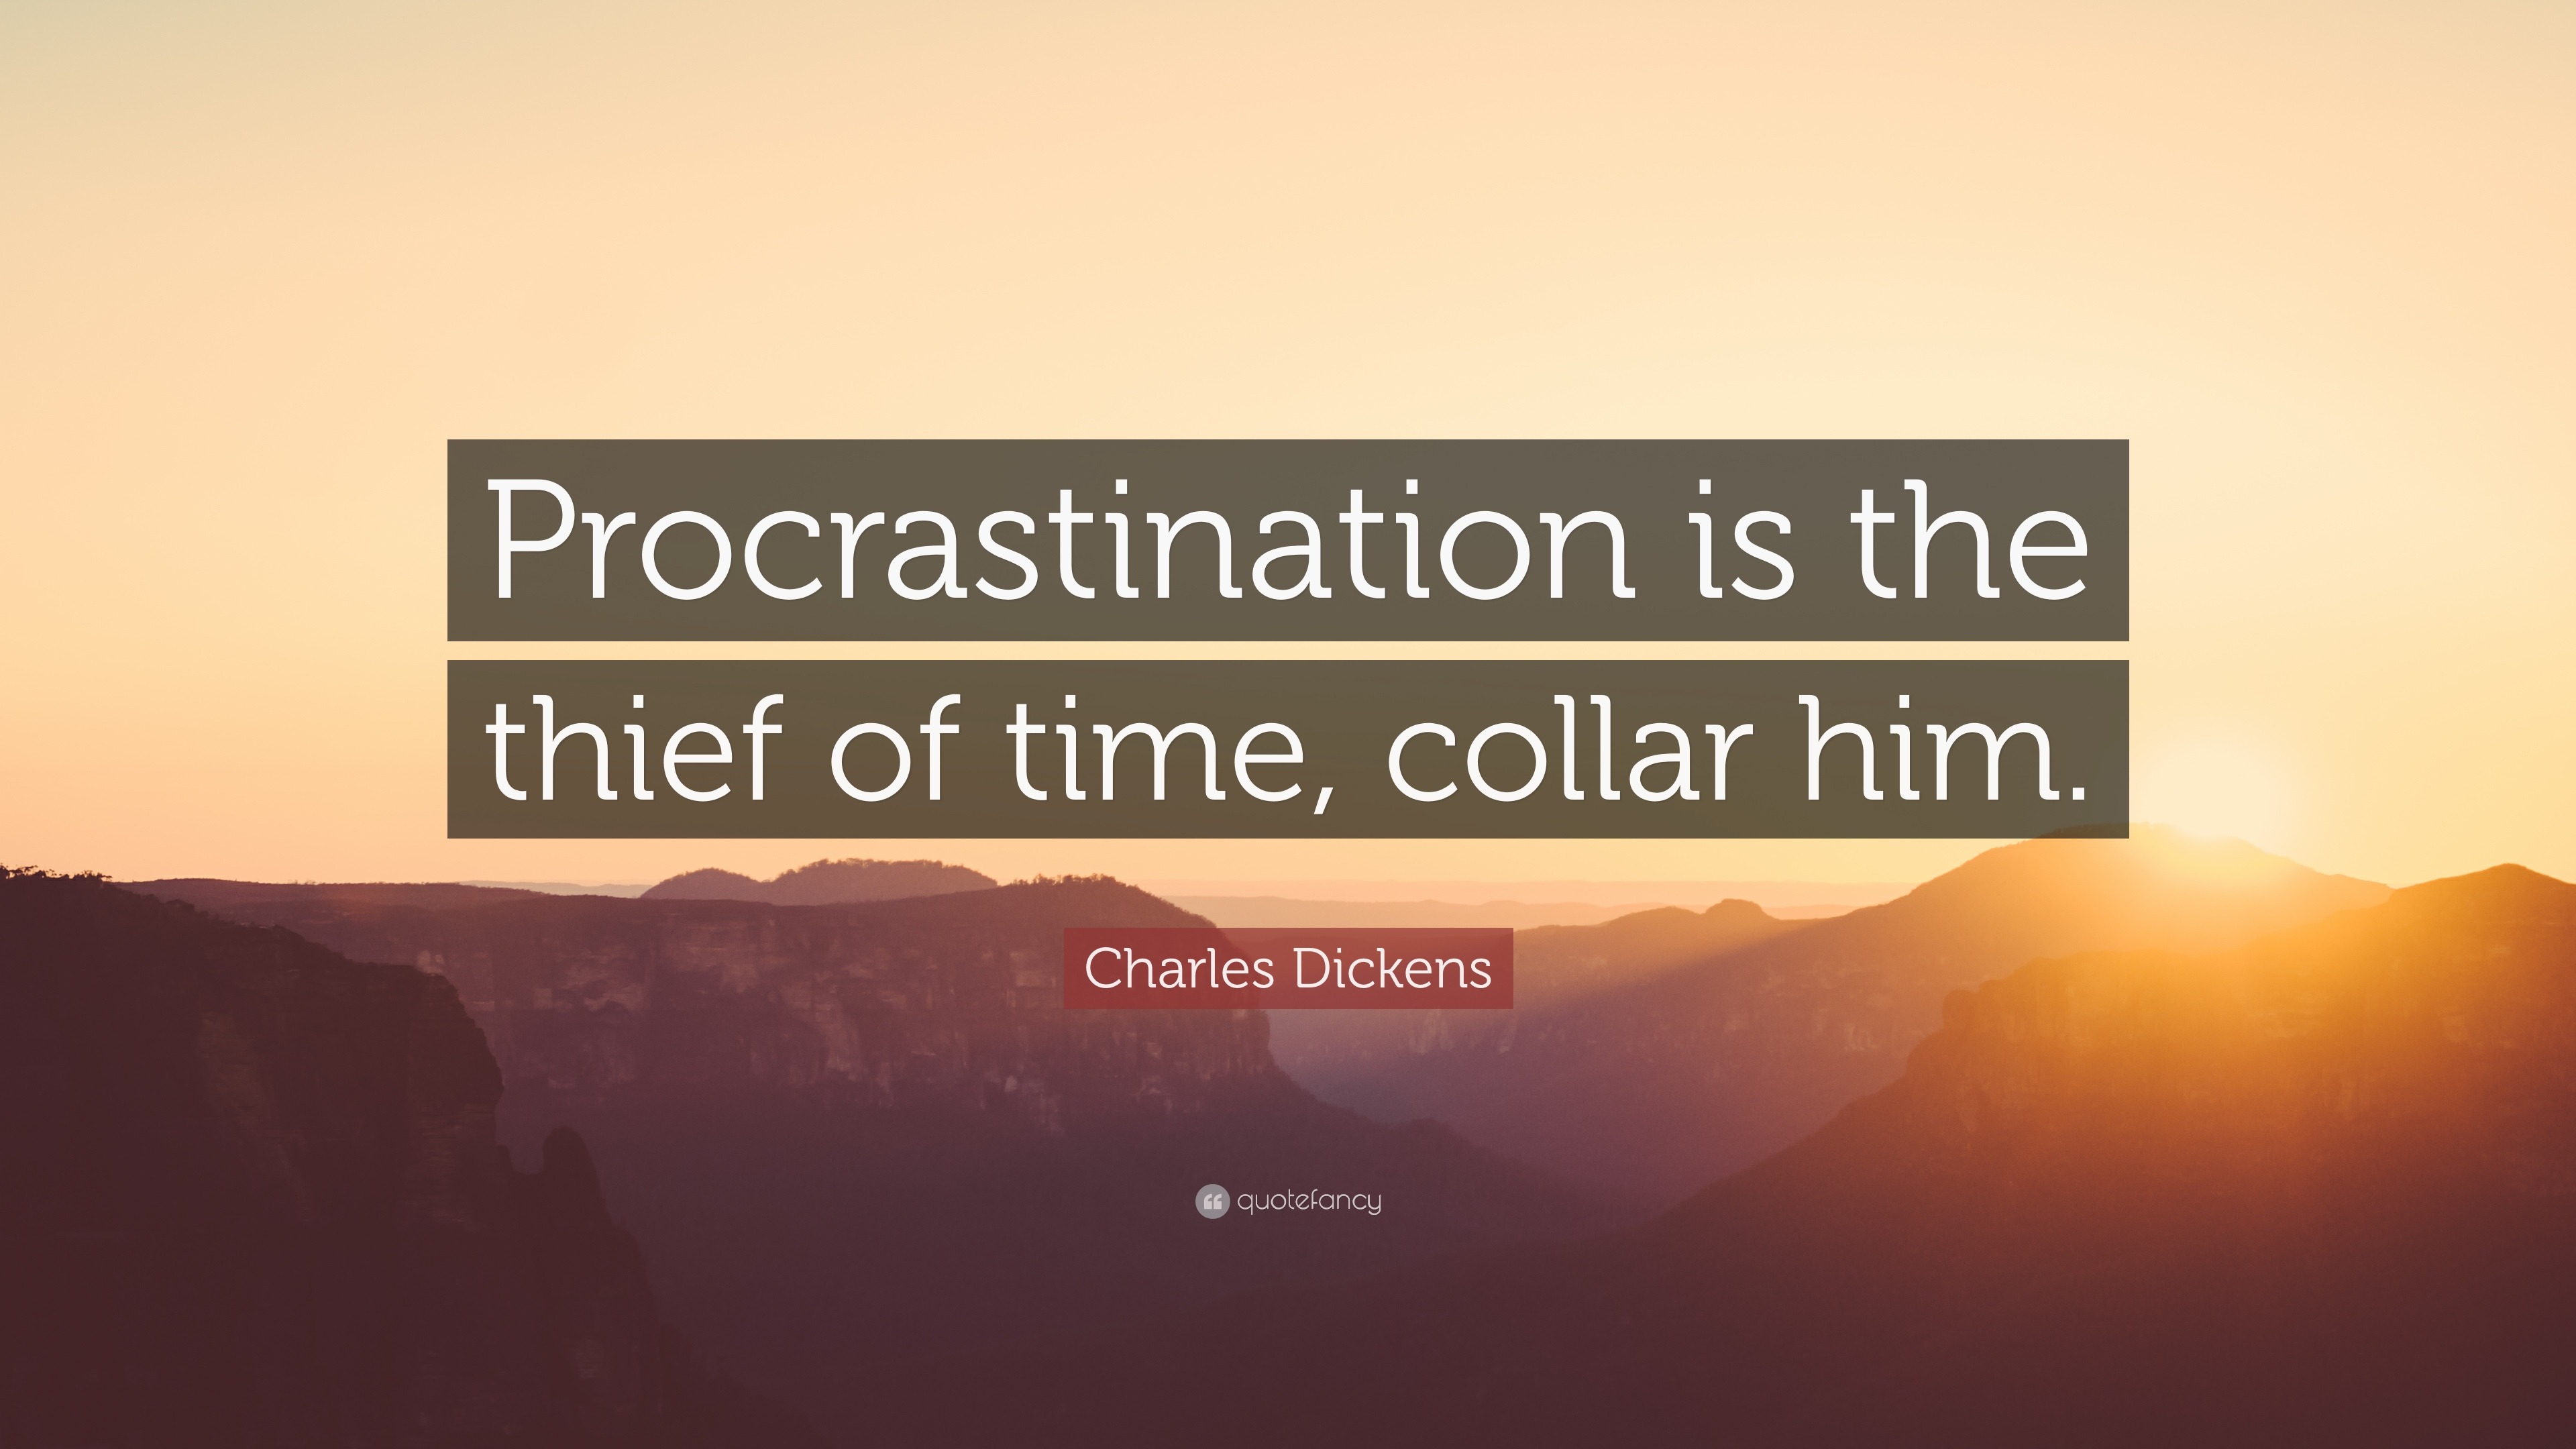 Delay or procrastination?